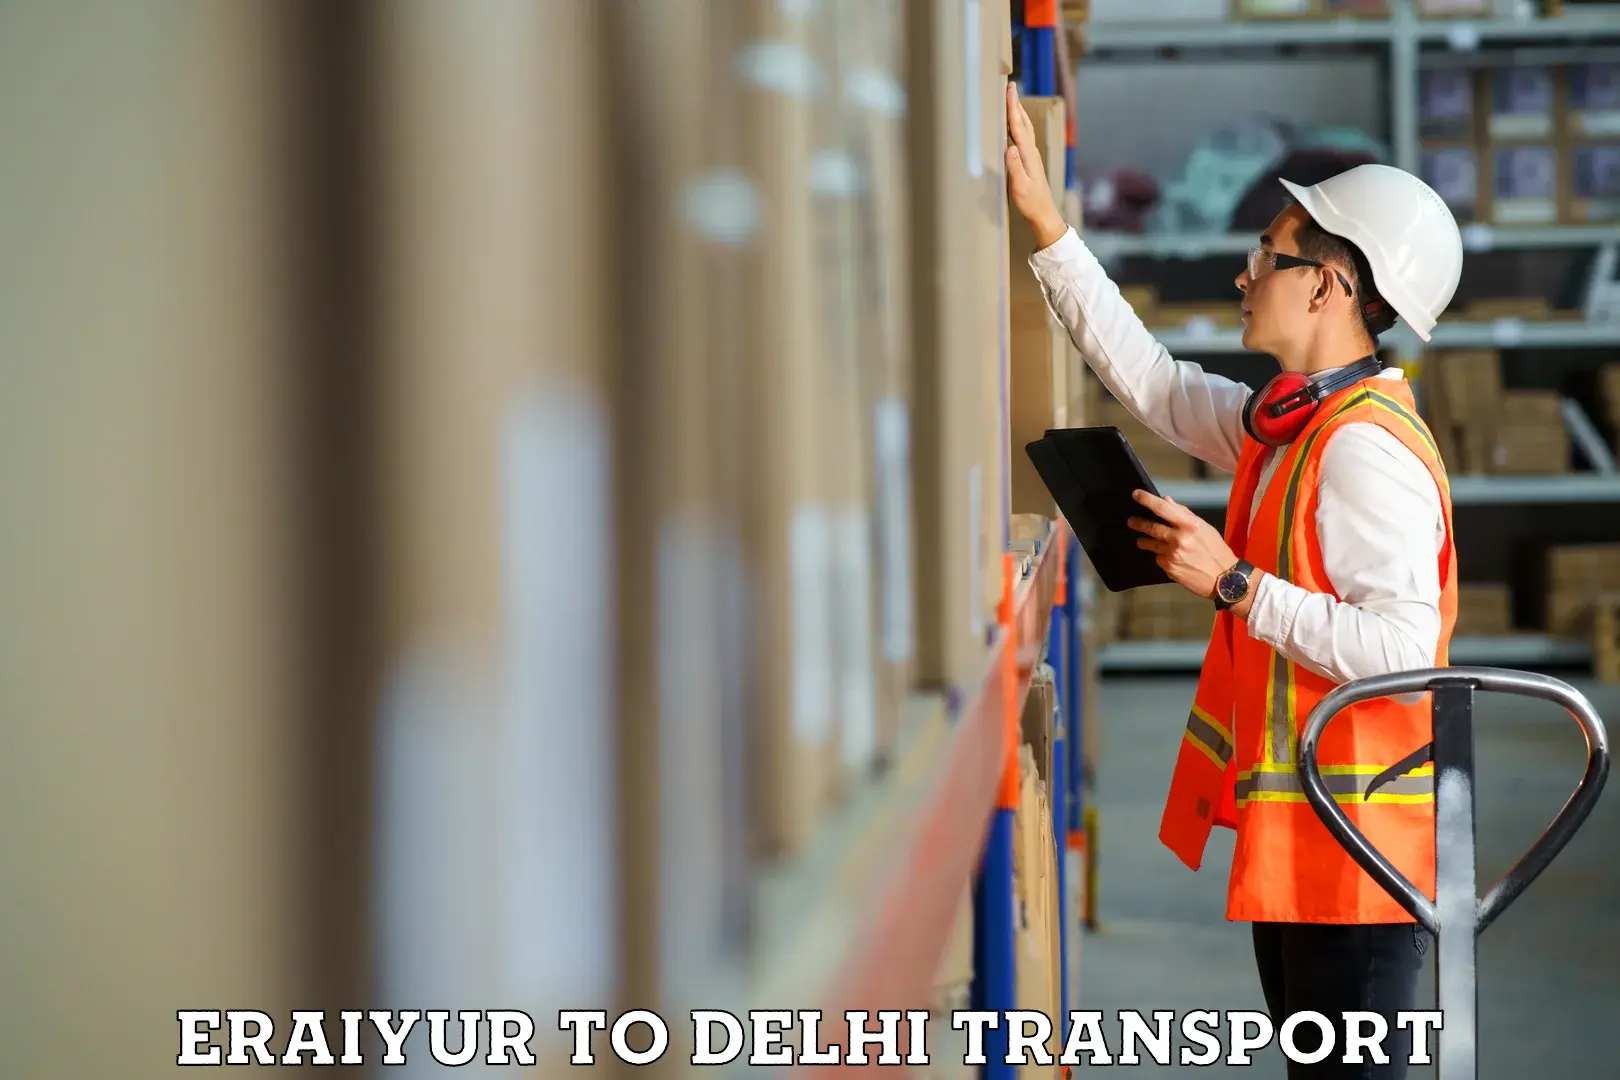 Luggage transport services Eraiyur to NIT Delhi